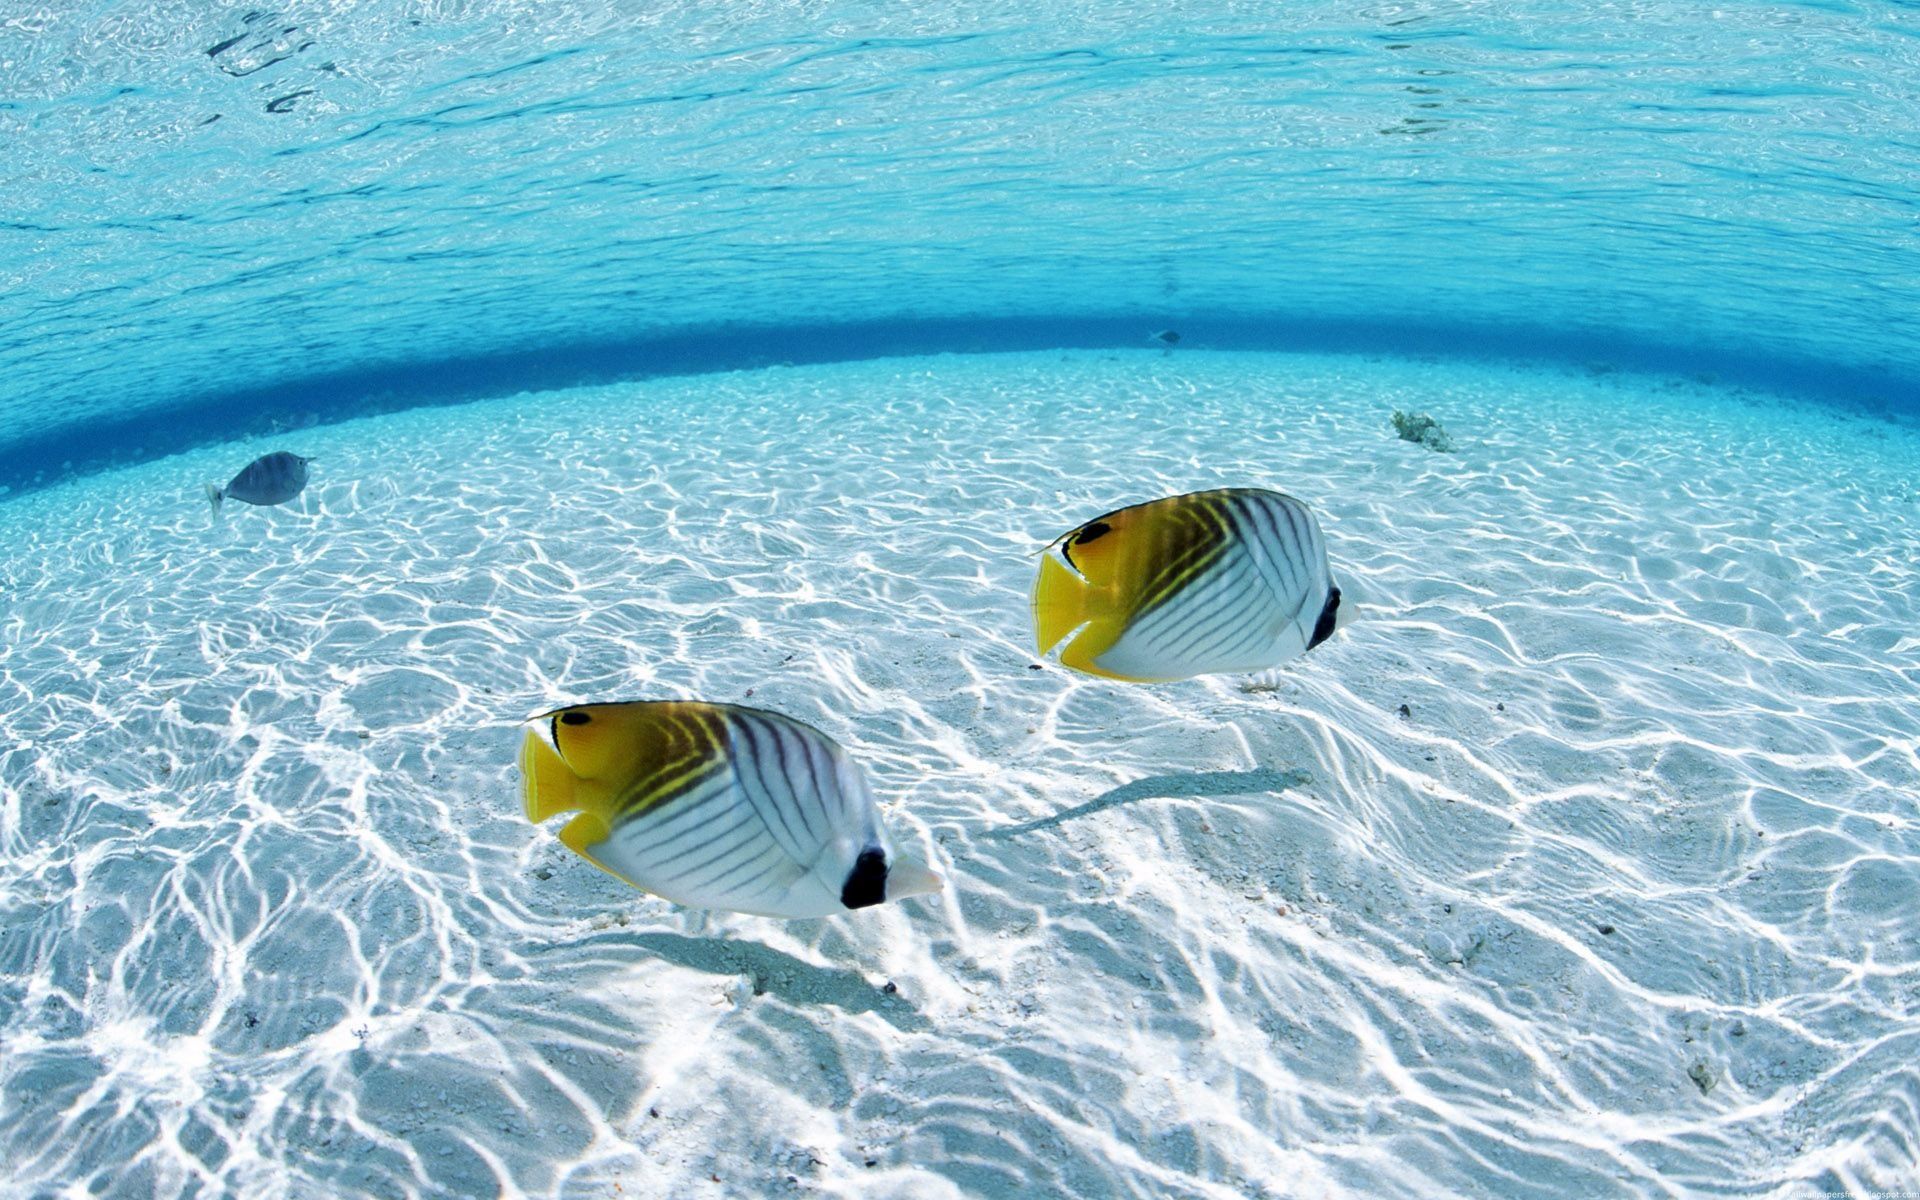  Fisch Hintergrundbild 1920x1200. Kostenlose Hintergrundbilder Gelb Weiß Gestreifter Fisch Auf Blauem Wasser, Bilder Für Ihren Desktop Und Fotos